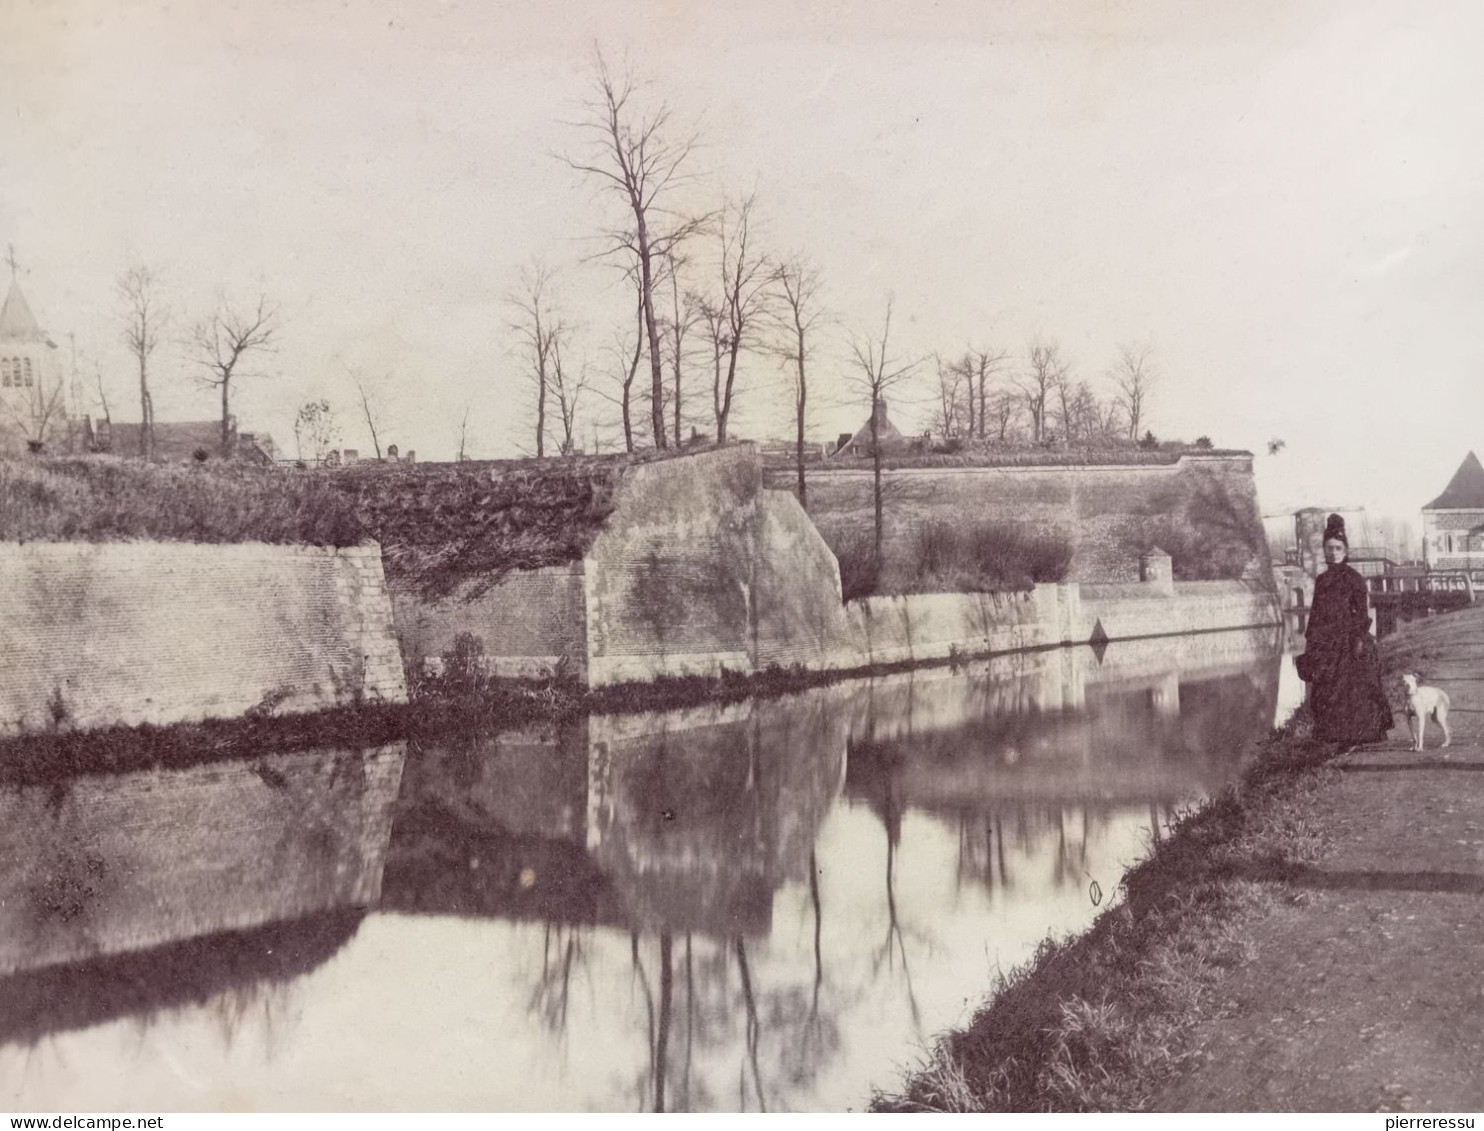 BOUCHAIN CANAL 1894 PHOTO 17 X 11.8 Cm - Places